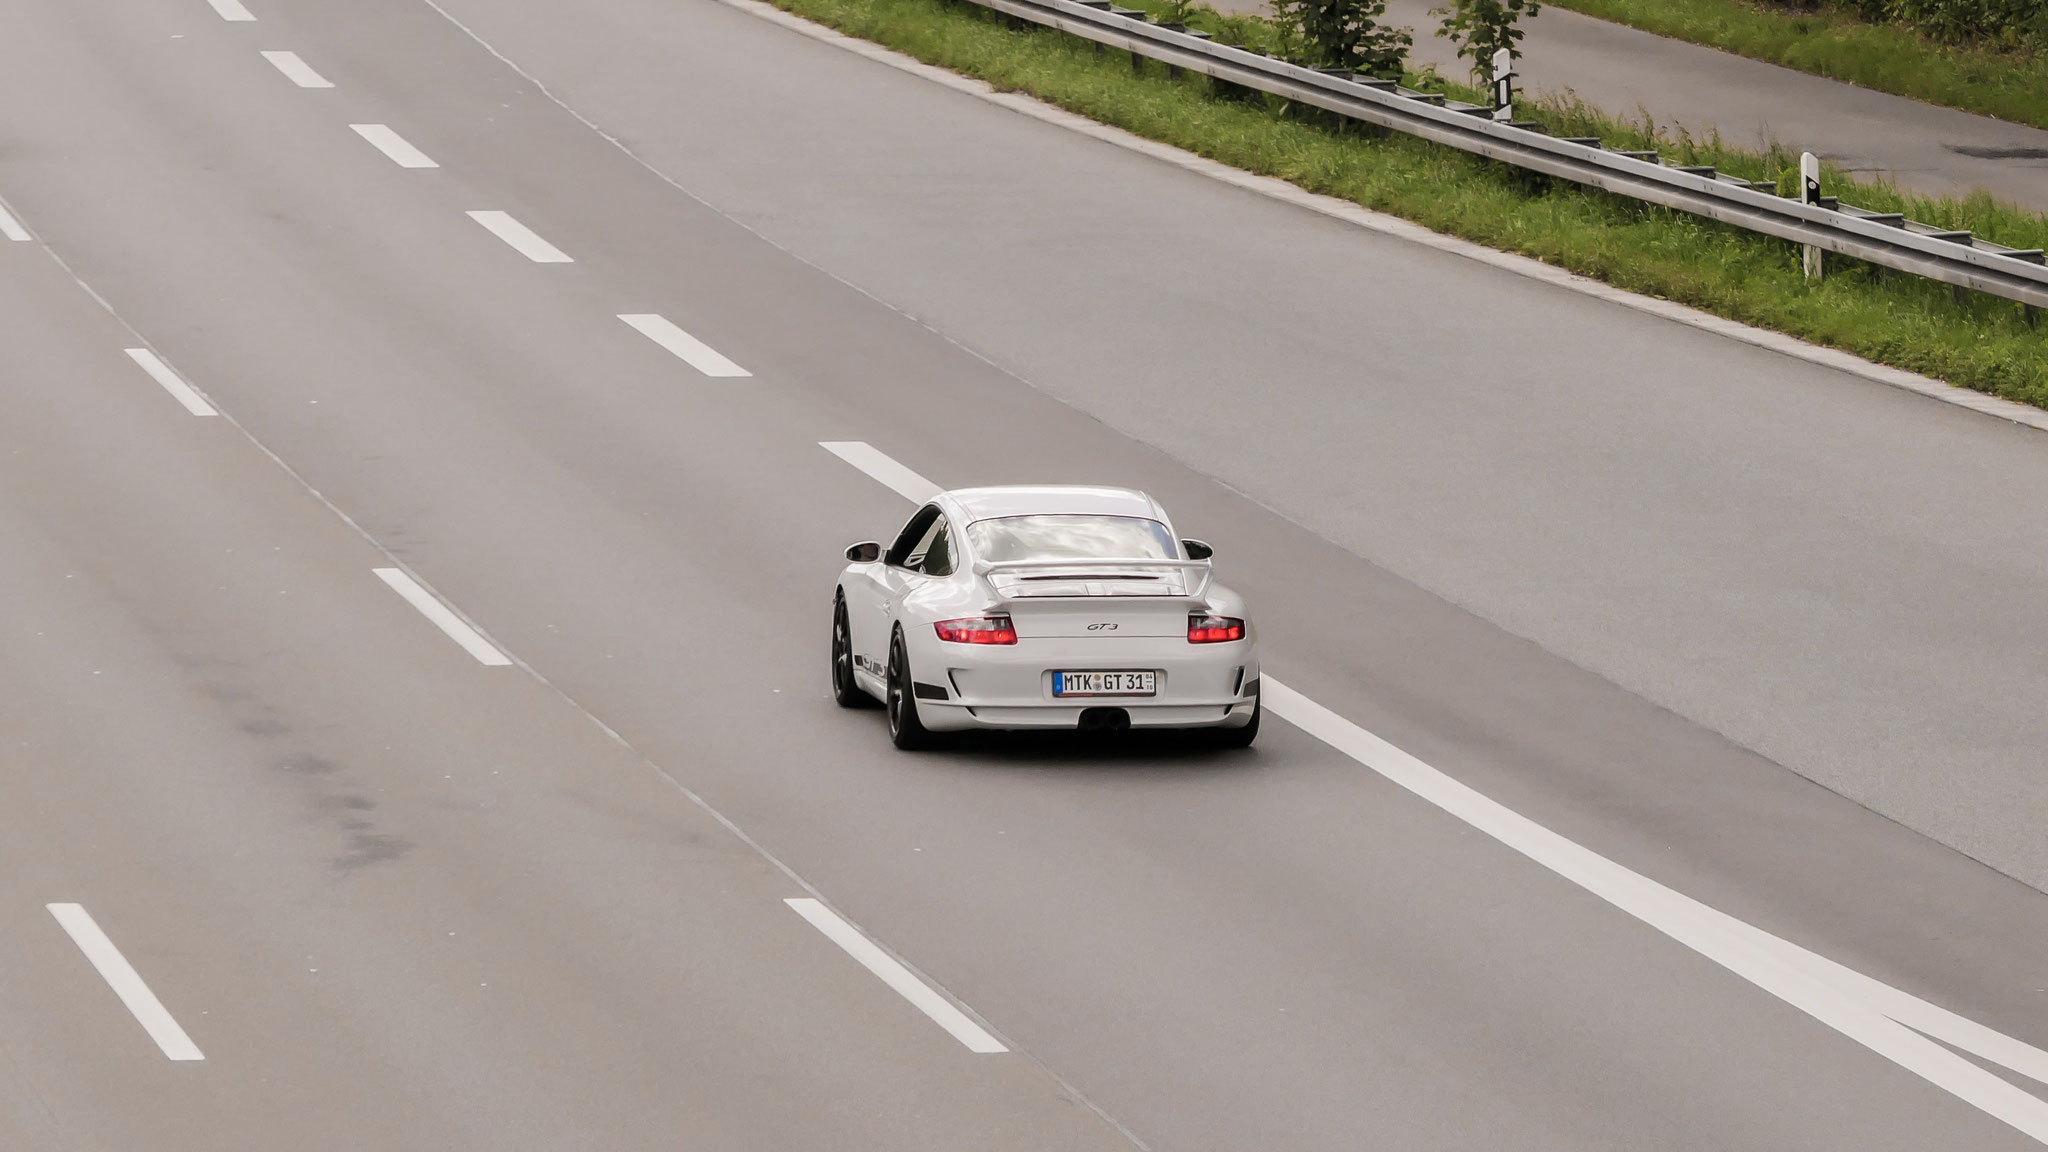 Porsche GT3 997 - MTK-GT31